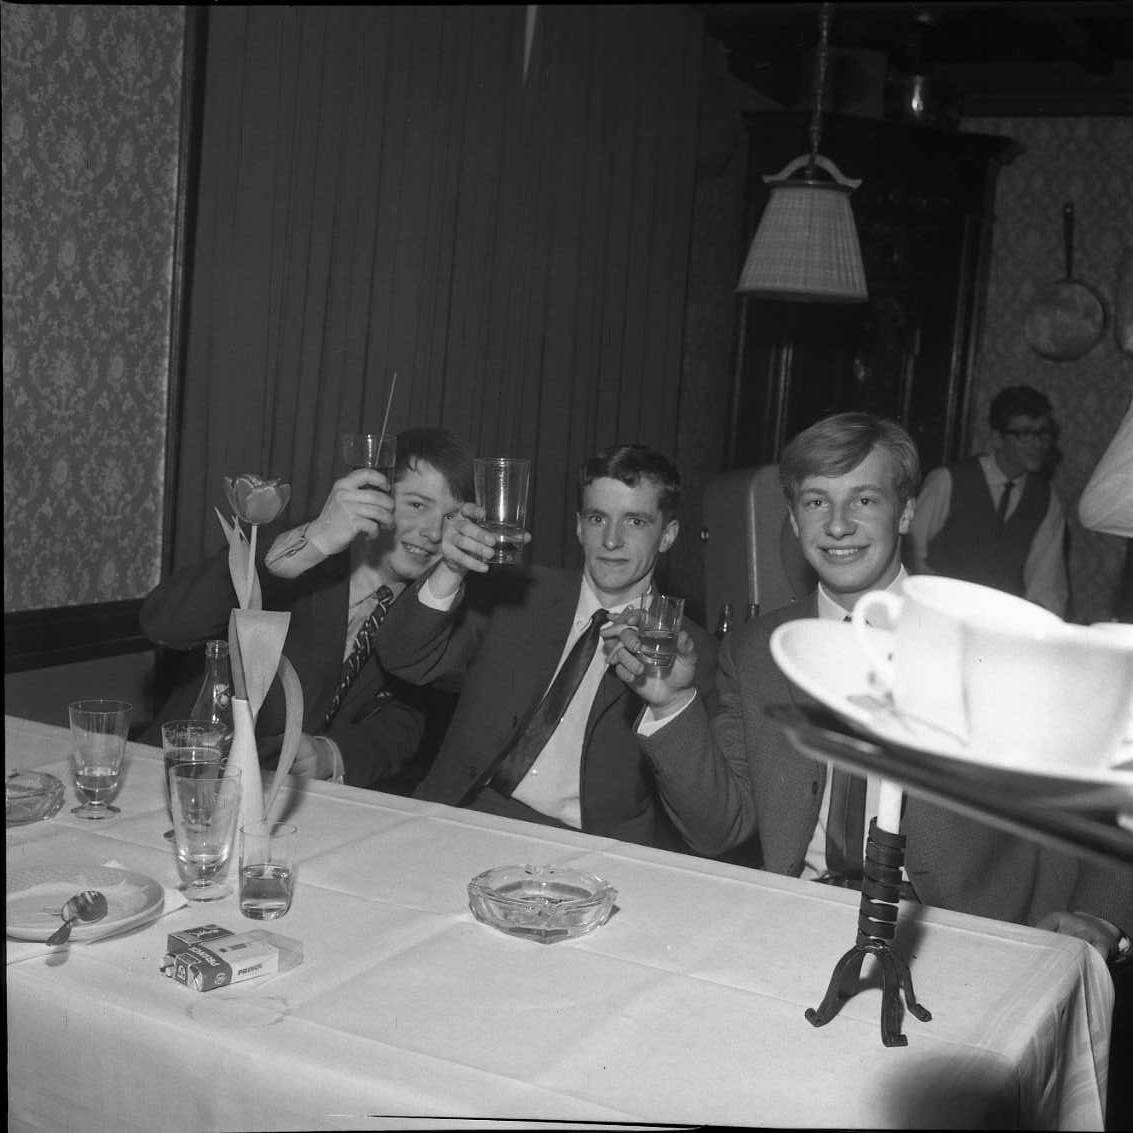 Tre unga och glada män i kostym och slips sitter vid ett bord och lyfter sina (grogglas) mot fotografen. På bordet står det flera tomma glas, askkopp, cigaretter och några använda assietter. En bricka med kaffekoppar kommer in från höger. Fotografi i samband med årsmöte för Gränna AIS.